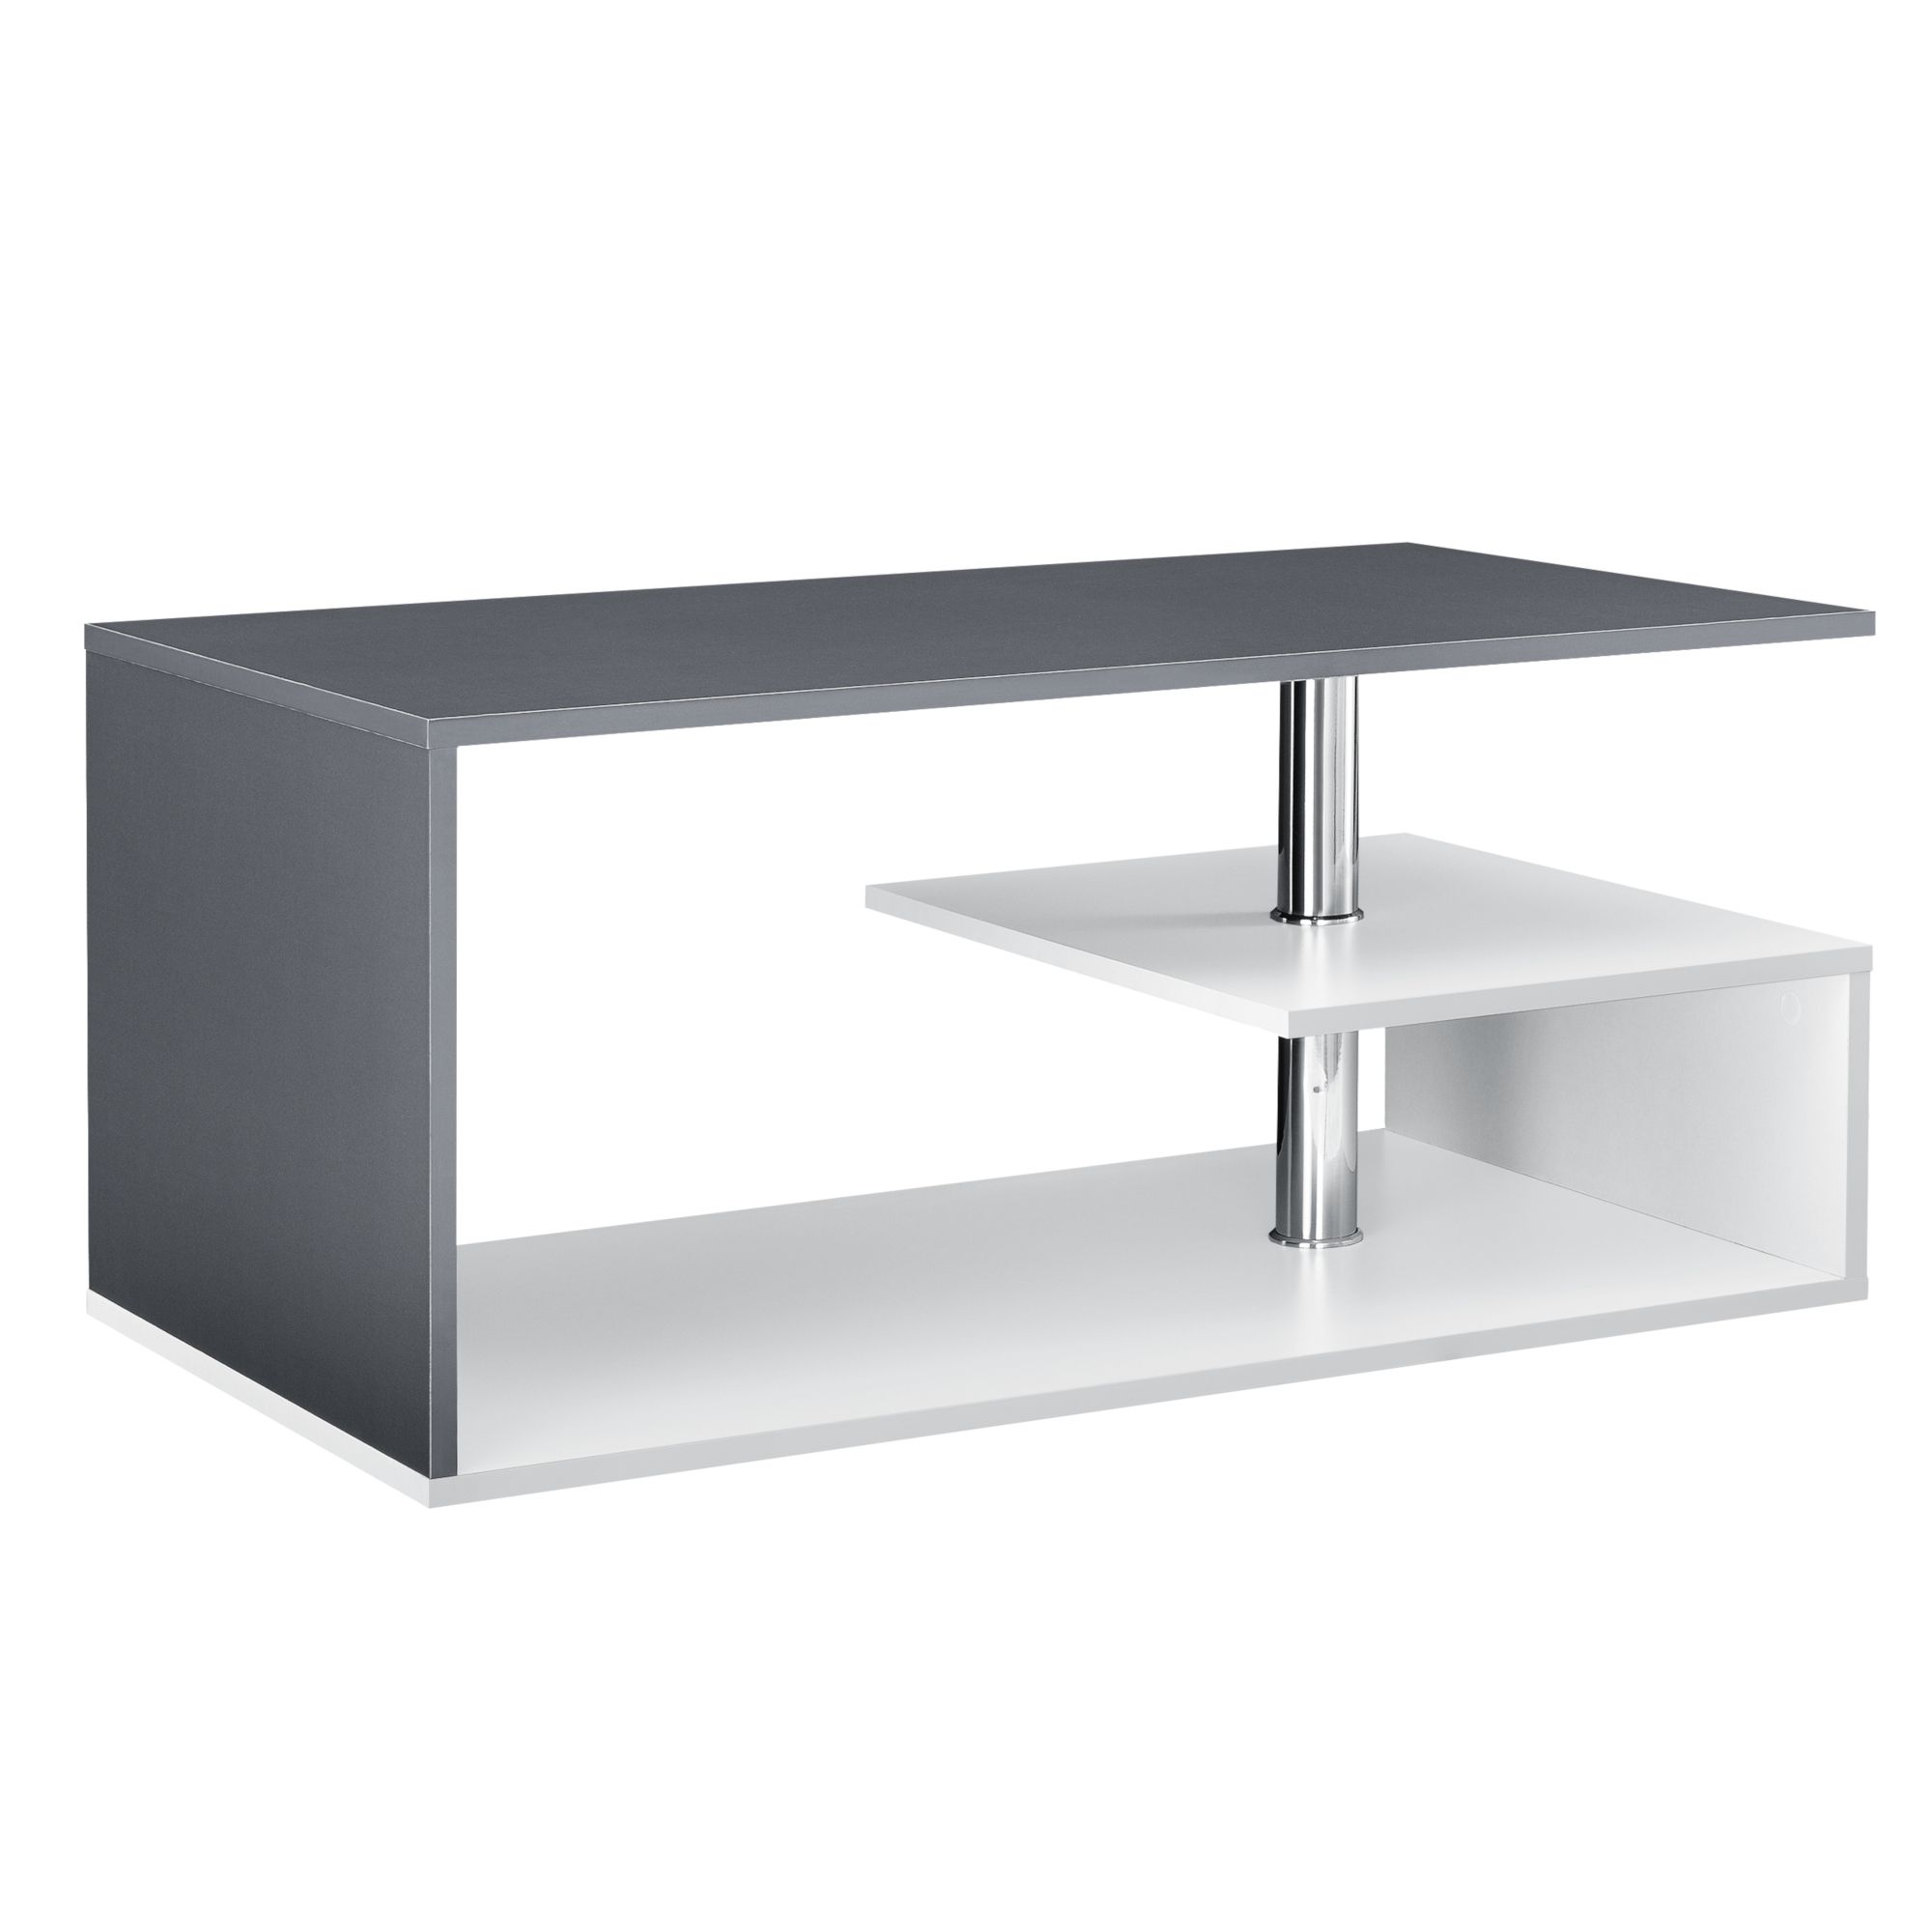 [en.casa] Konferenční stolek AANF-9805 bílý a šedý - H.T. Trade Service GmbH & Co. KG